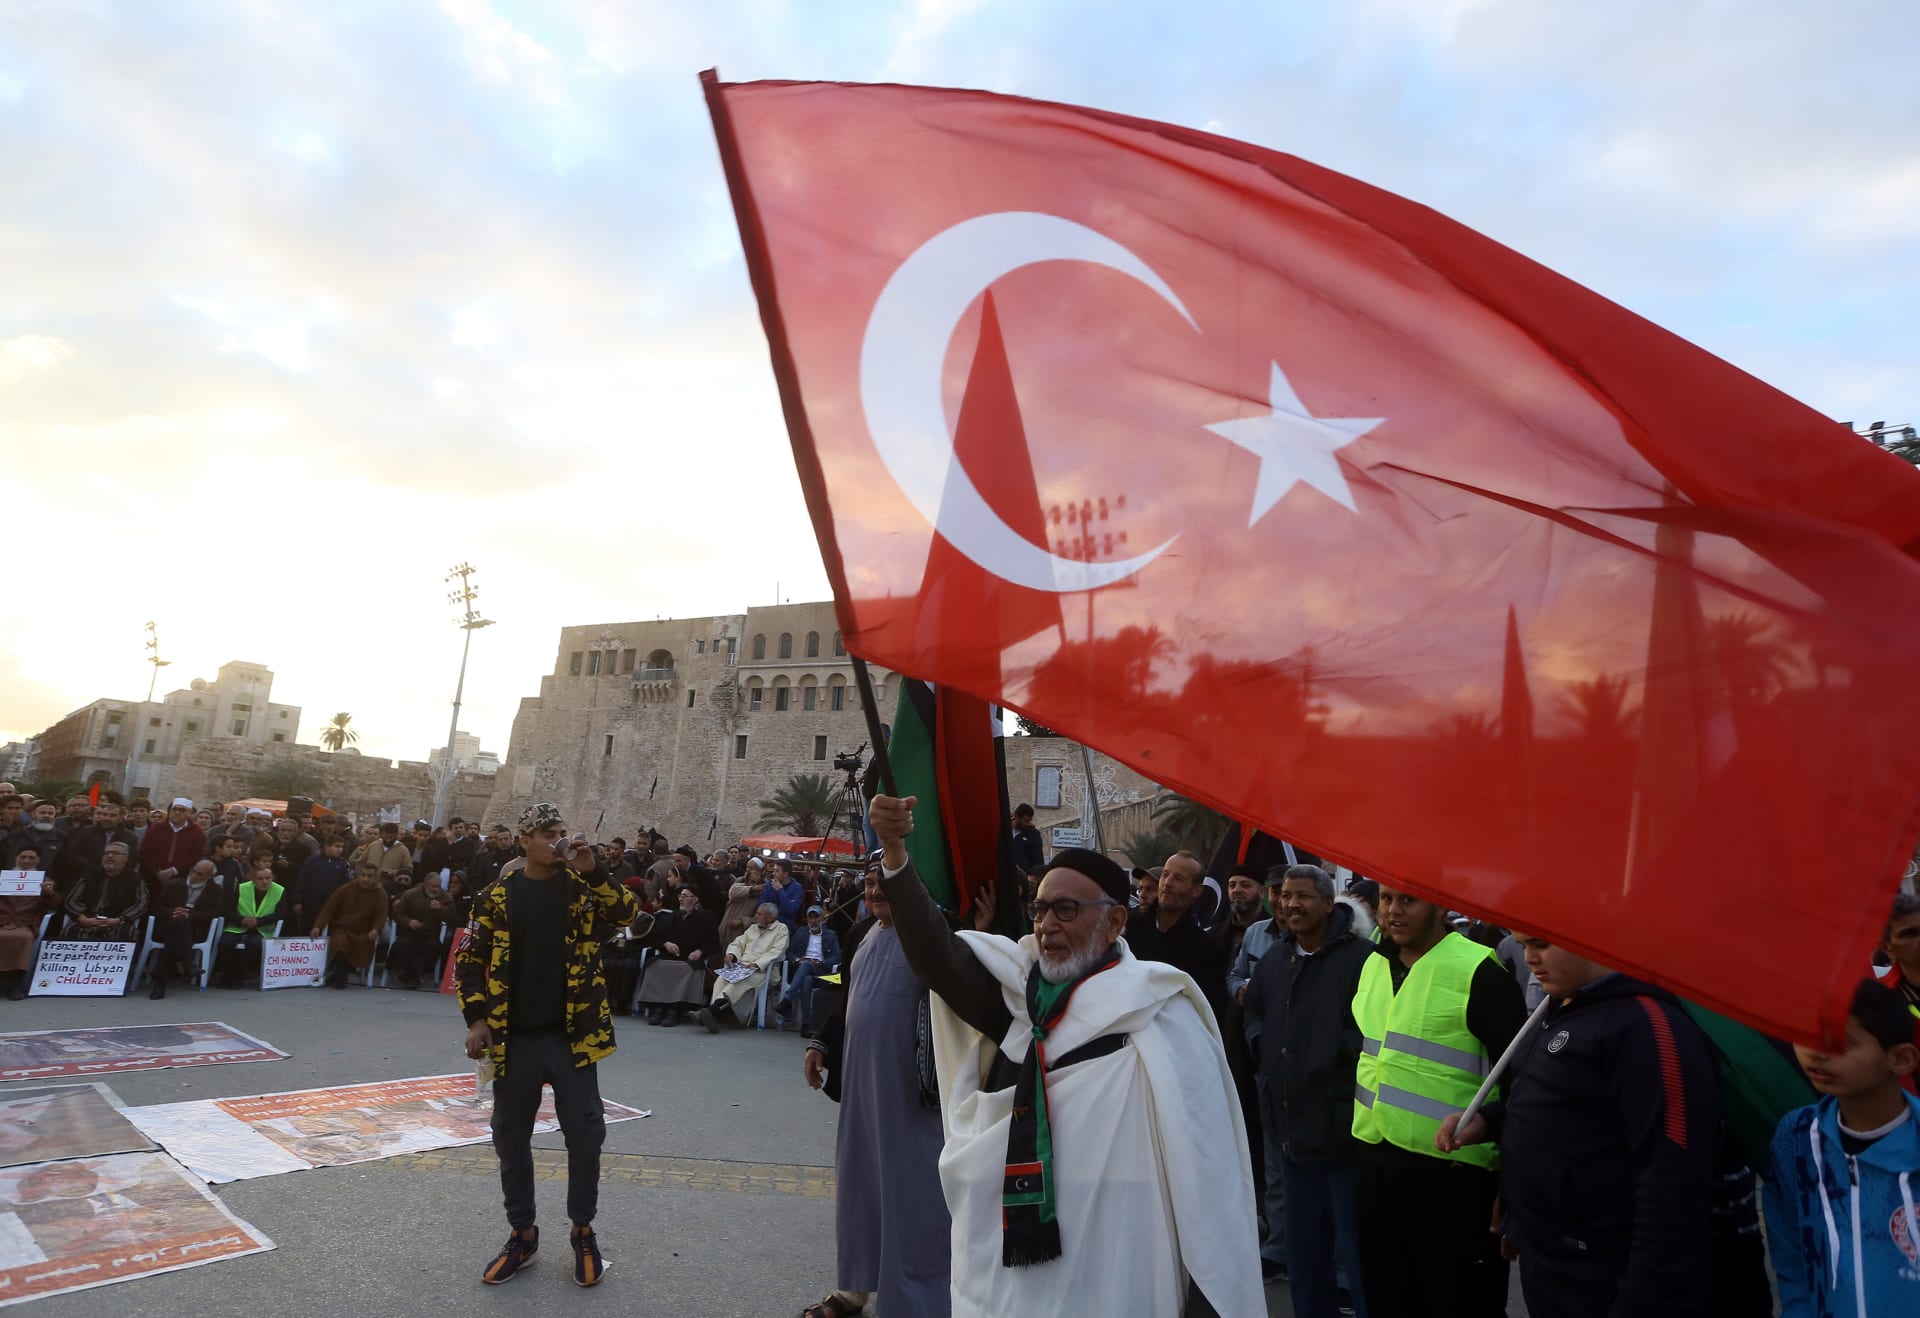 تركيا ترد على احتجاز قوات حفتر لسفينة تابعة لها وتُحذر من "عواقب وخيمة"